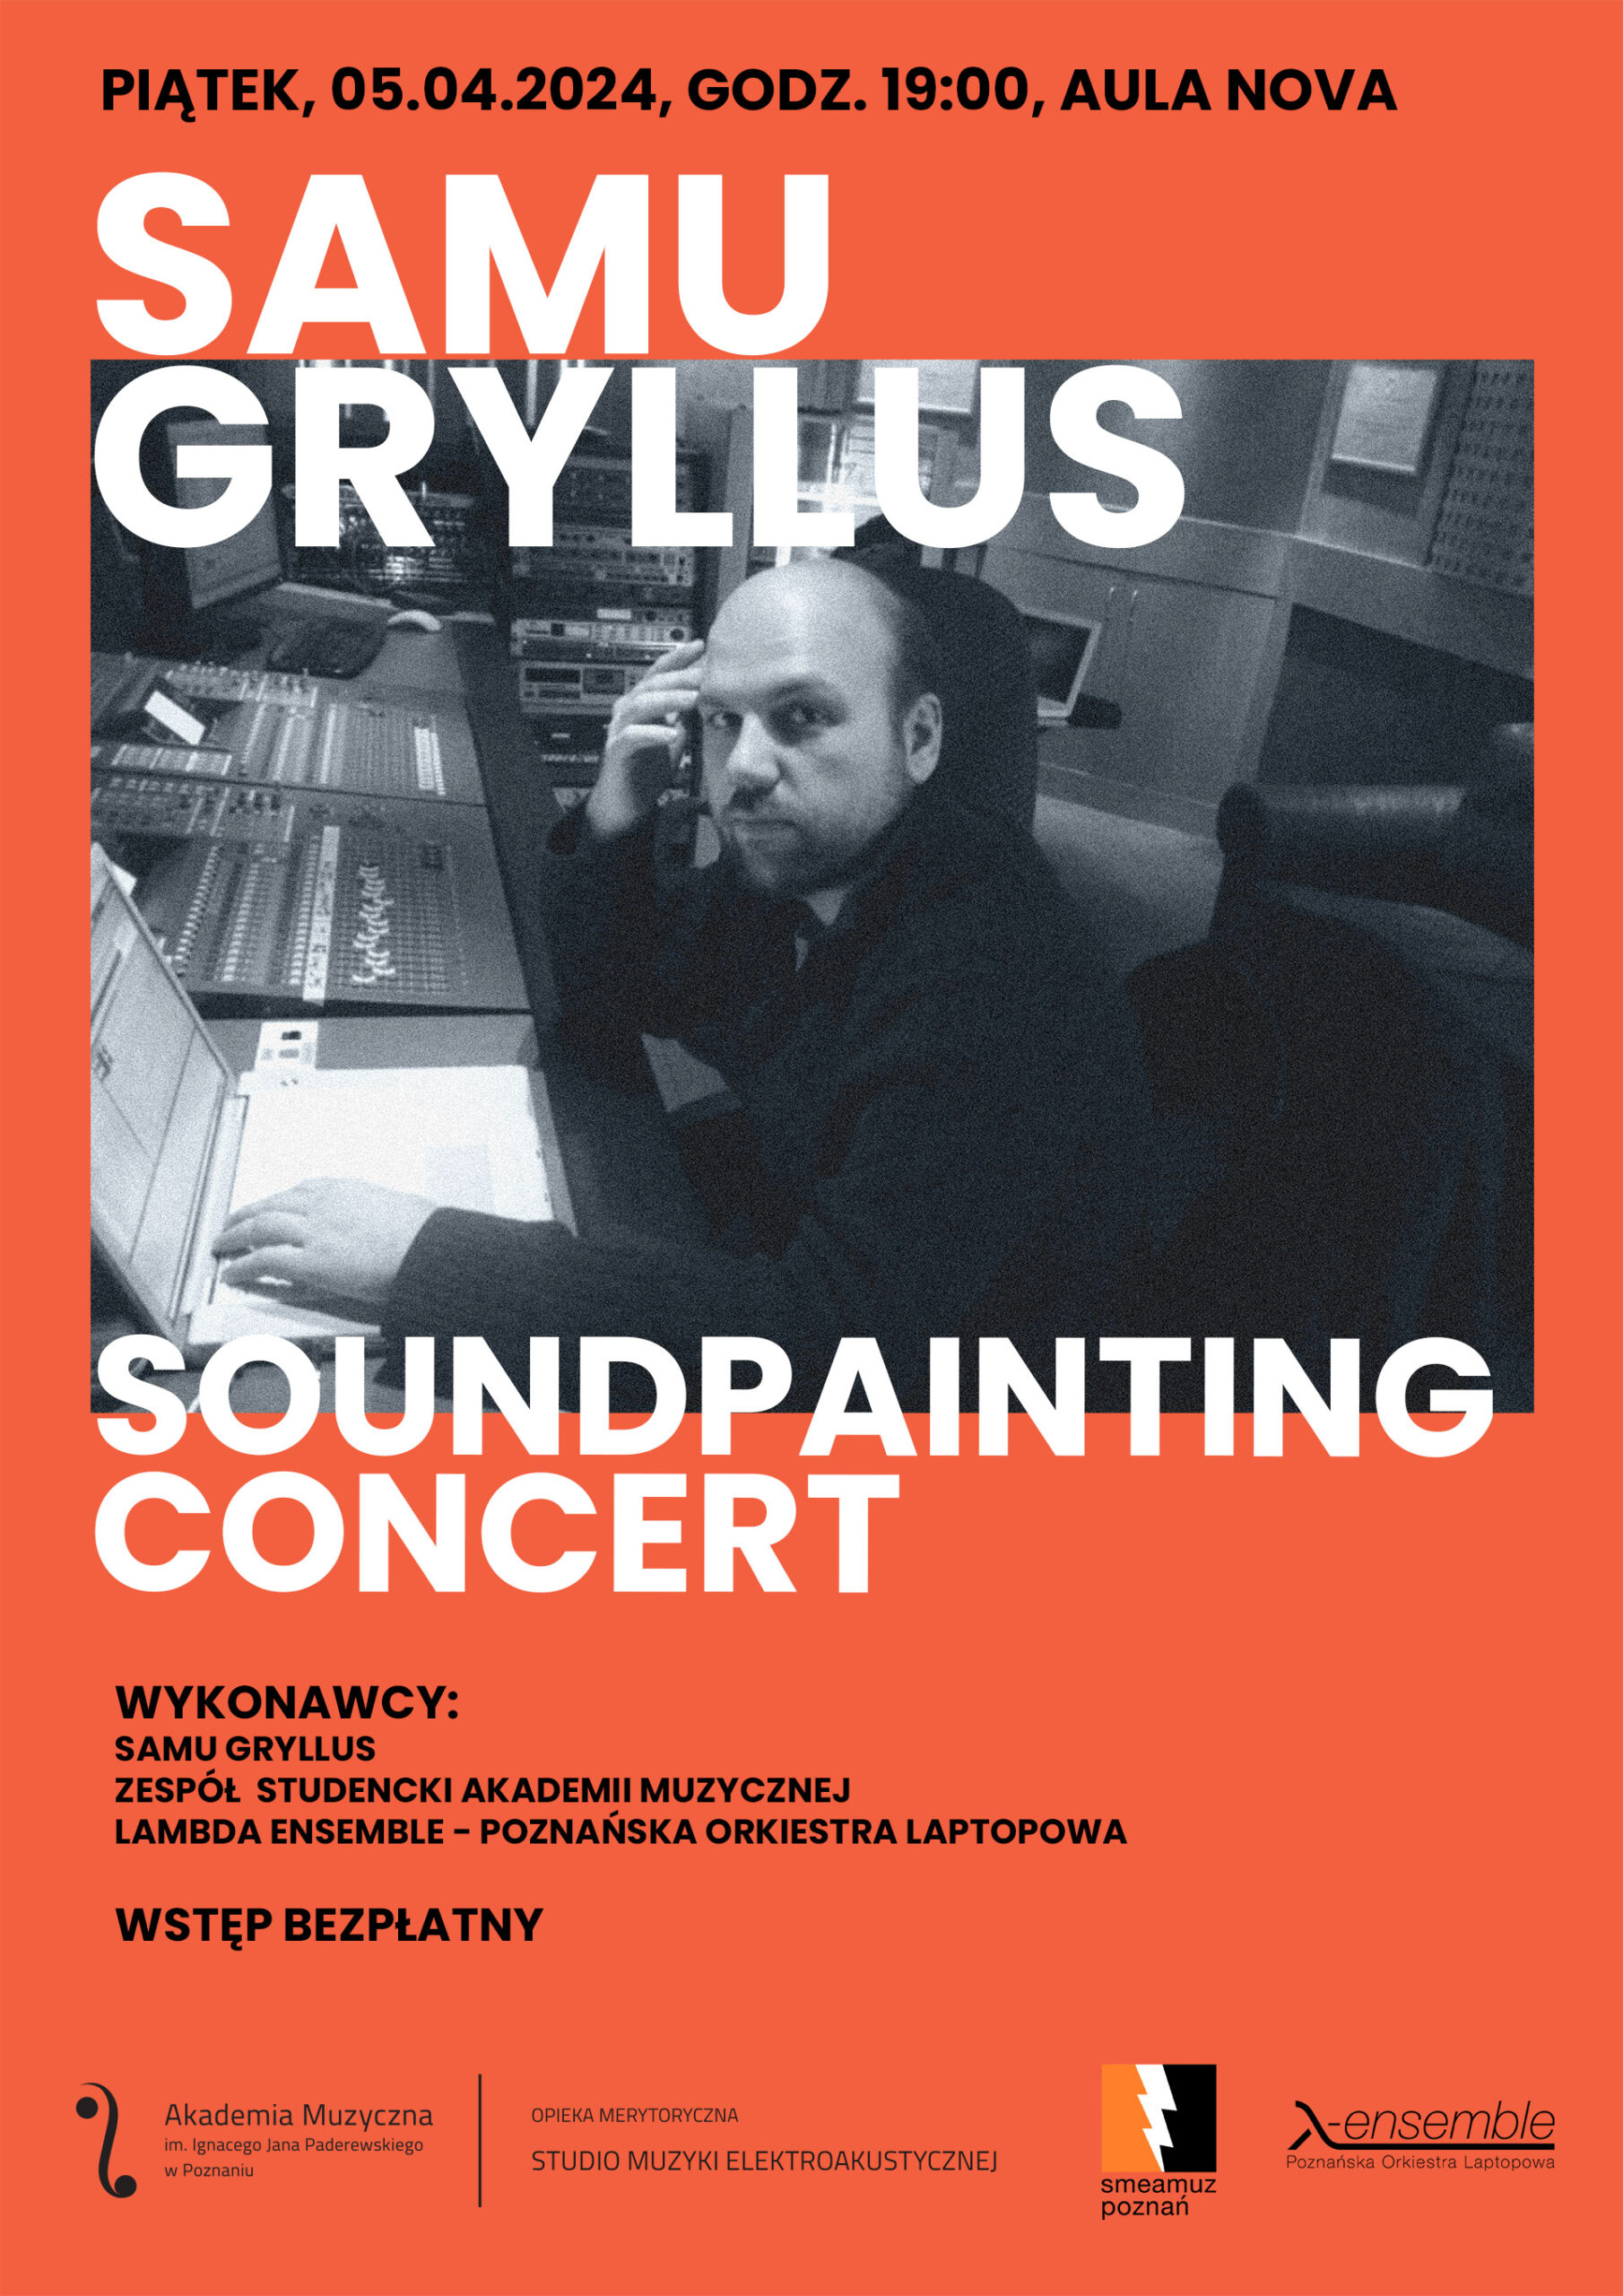 Afisz zawiera informacje na temat koncertu Samu Gryllusa w dniu 5 kwietnia 2024